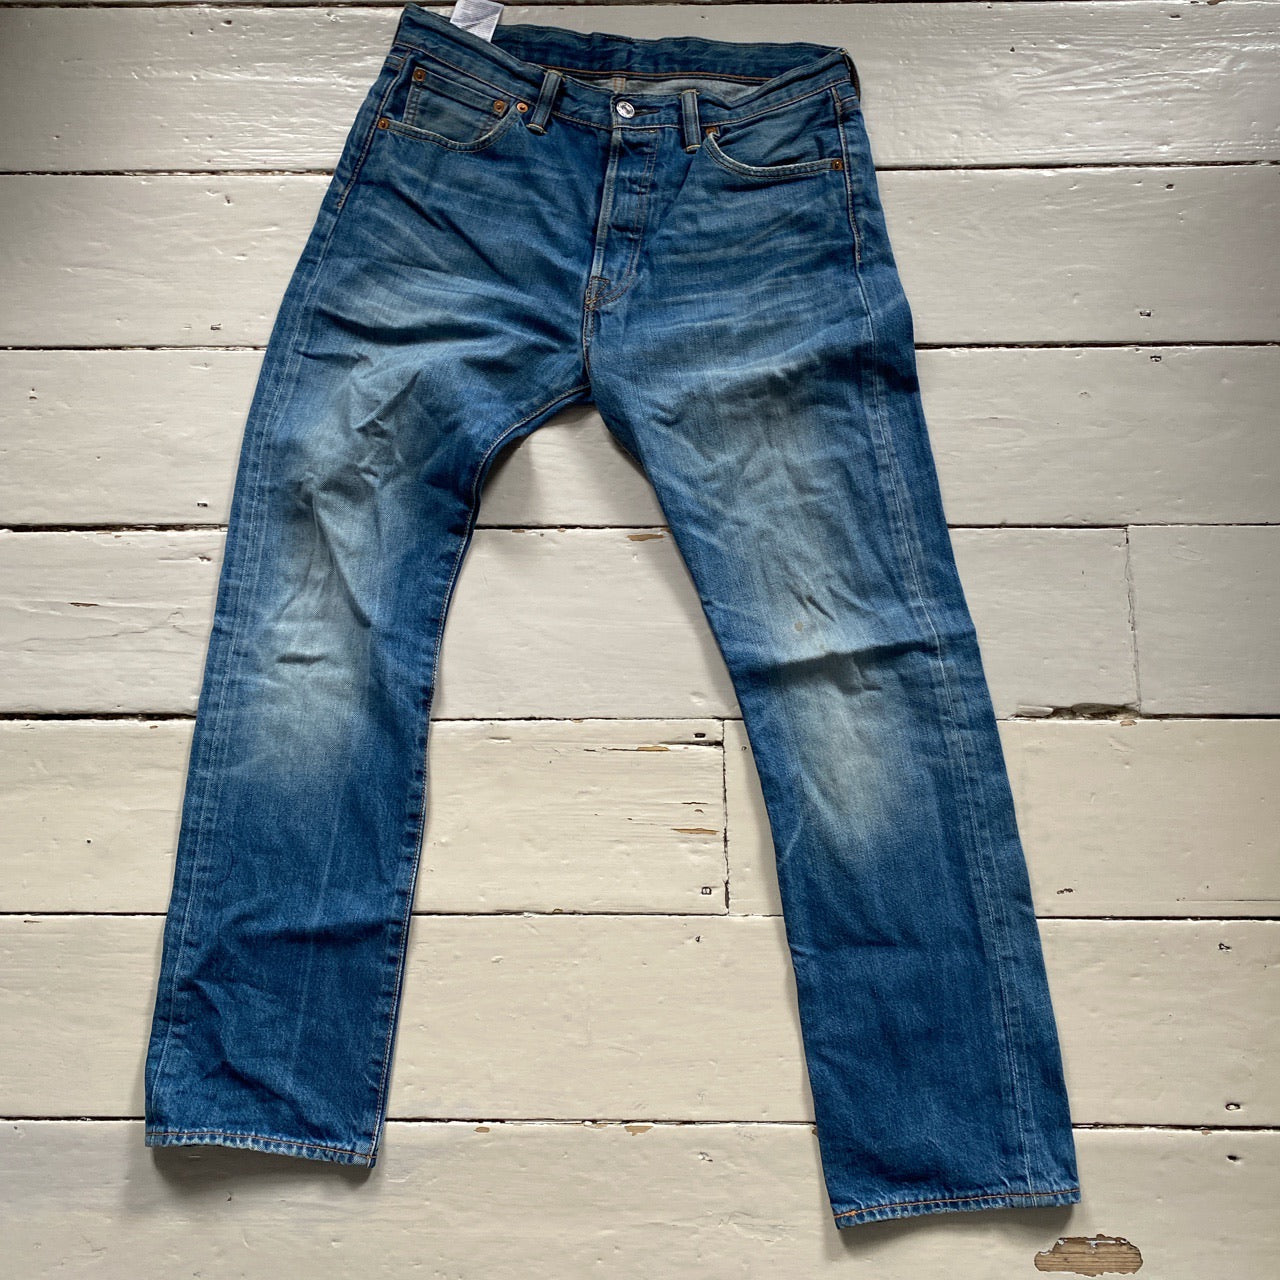 Levis 501 Blue Jeans (30/30)